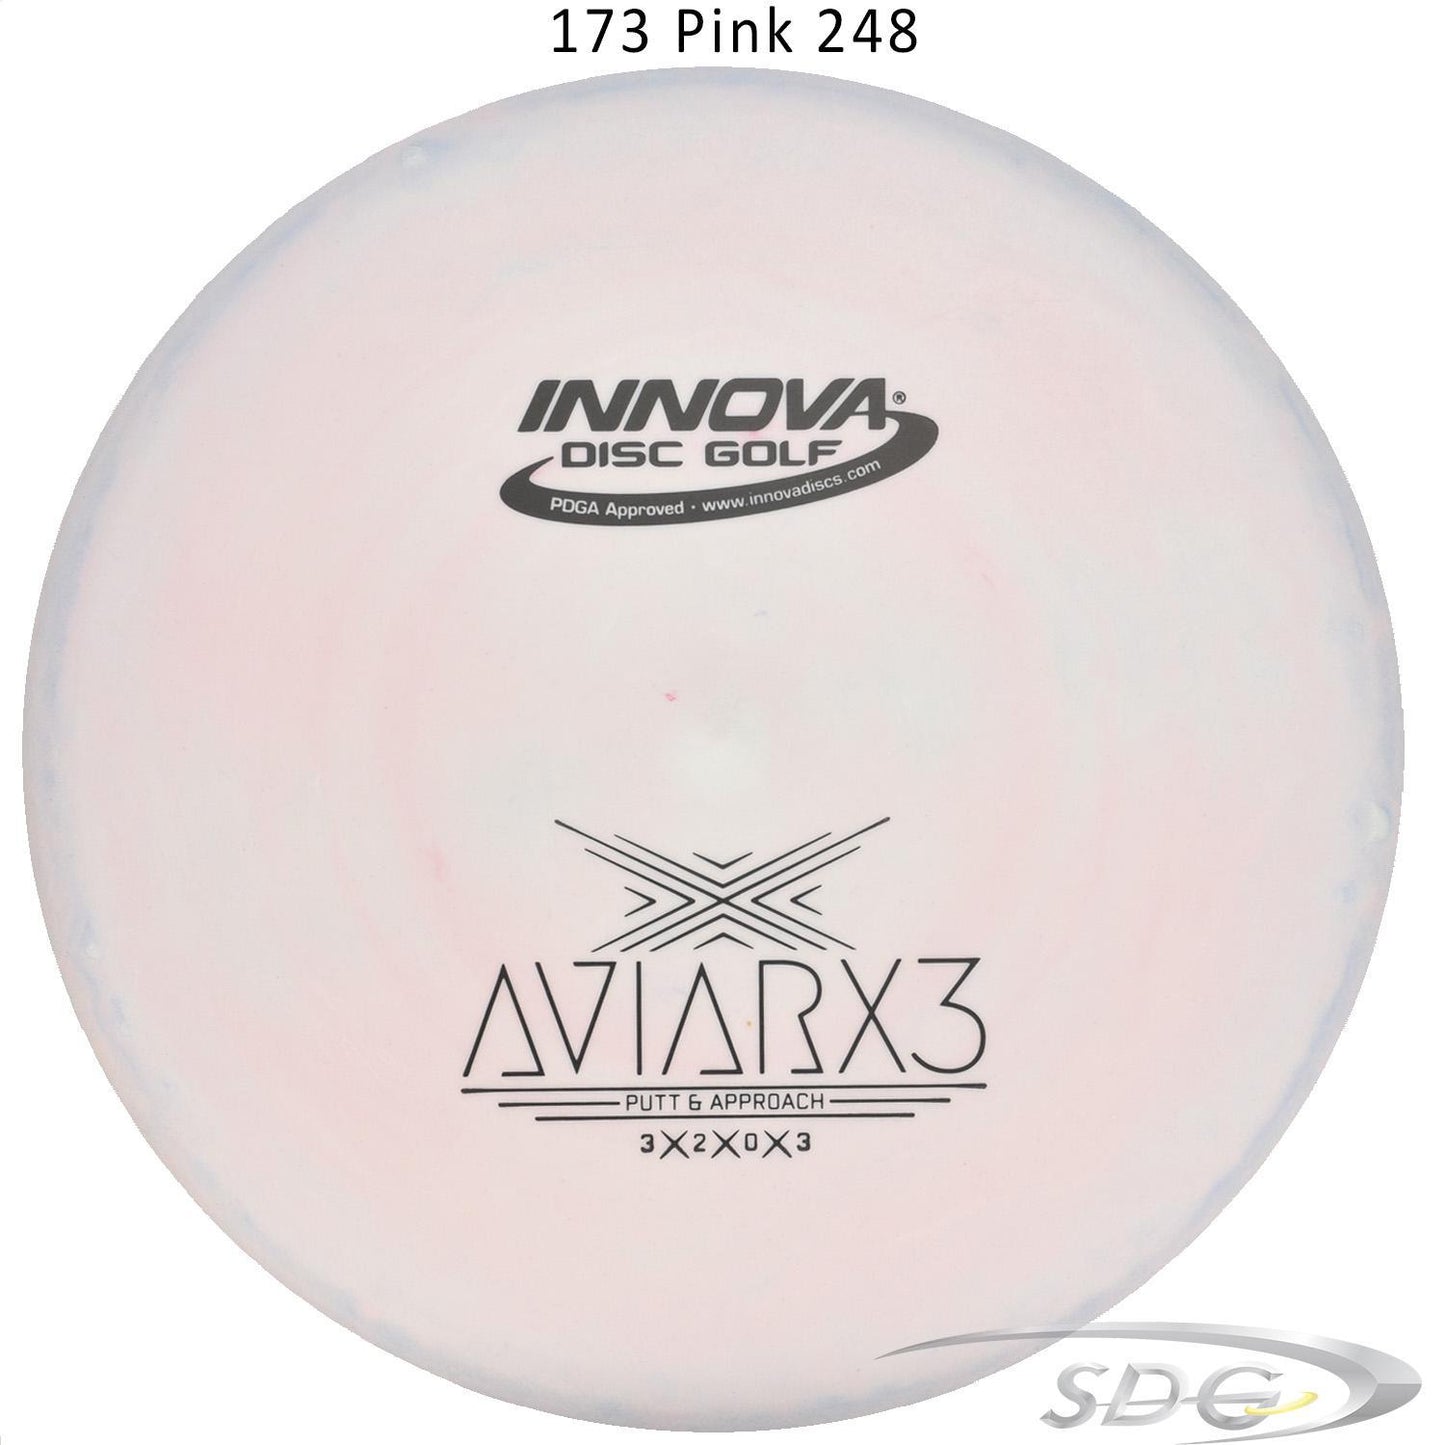 innova-dx-aviarx3-disc-golf-putter 173 Pink 248 